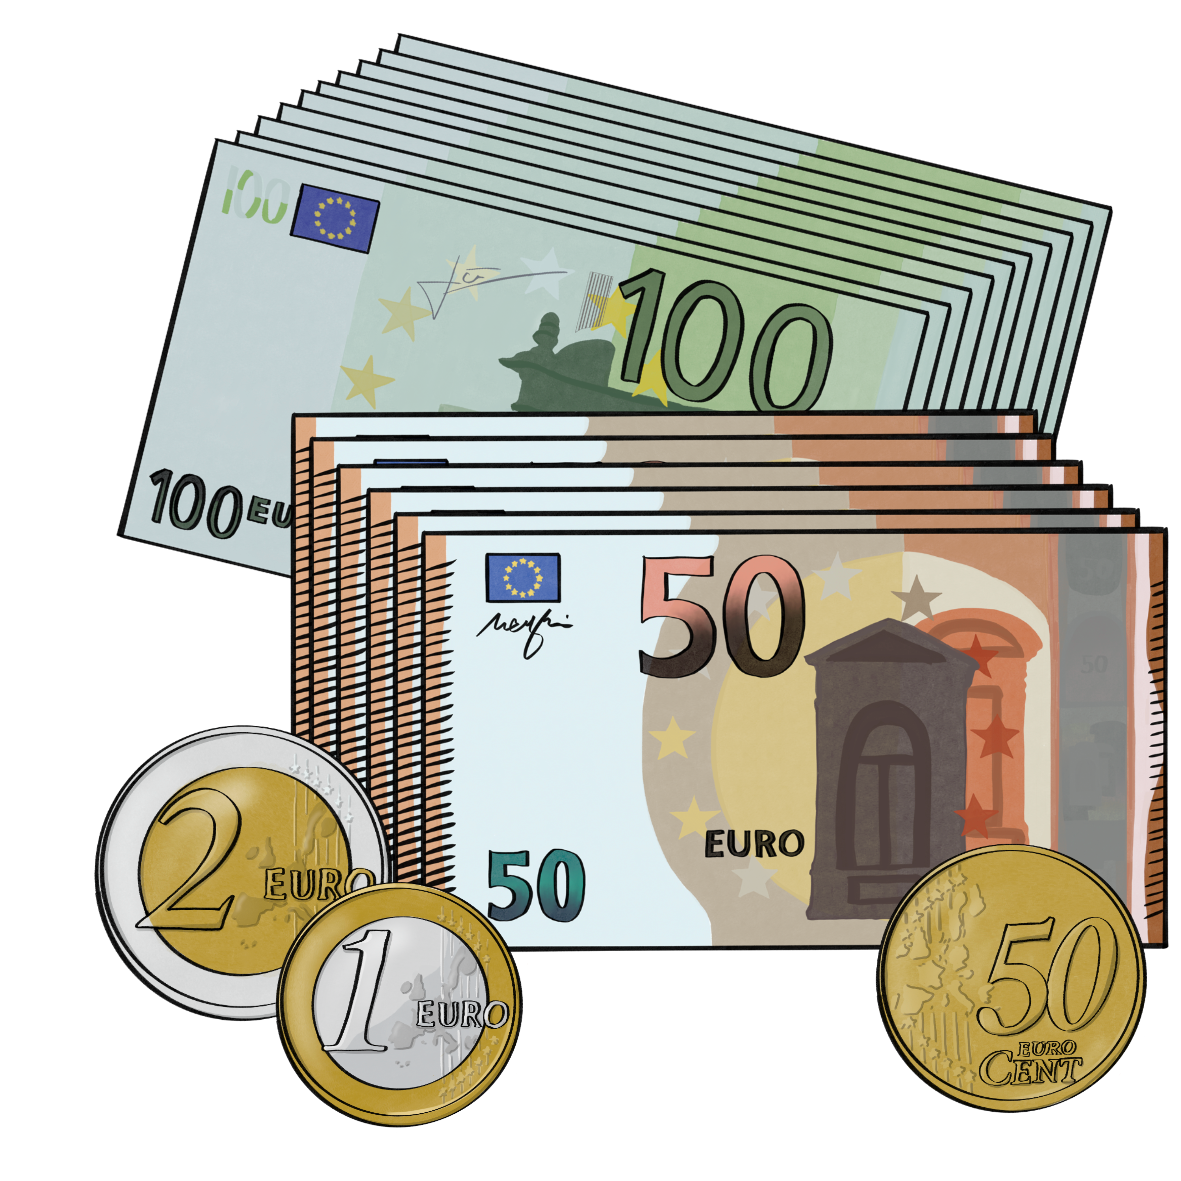 Ein Stapel 100 Euro Scheine, ein Stapel 50 Euro Scheine und einige Münzen.